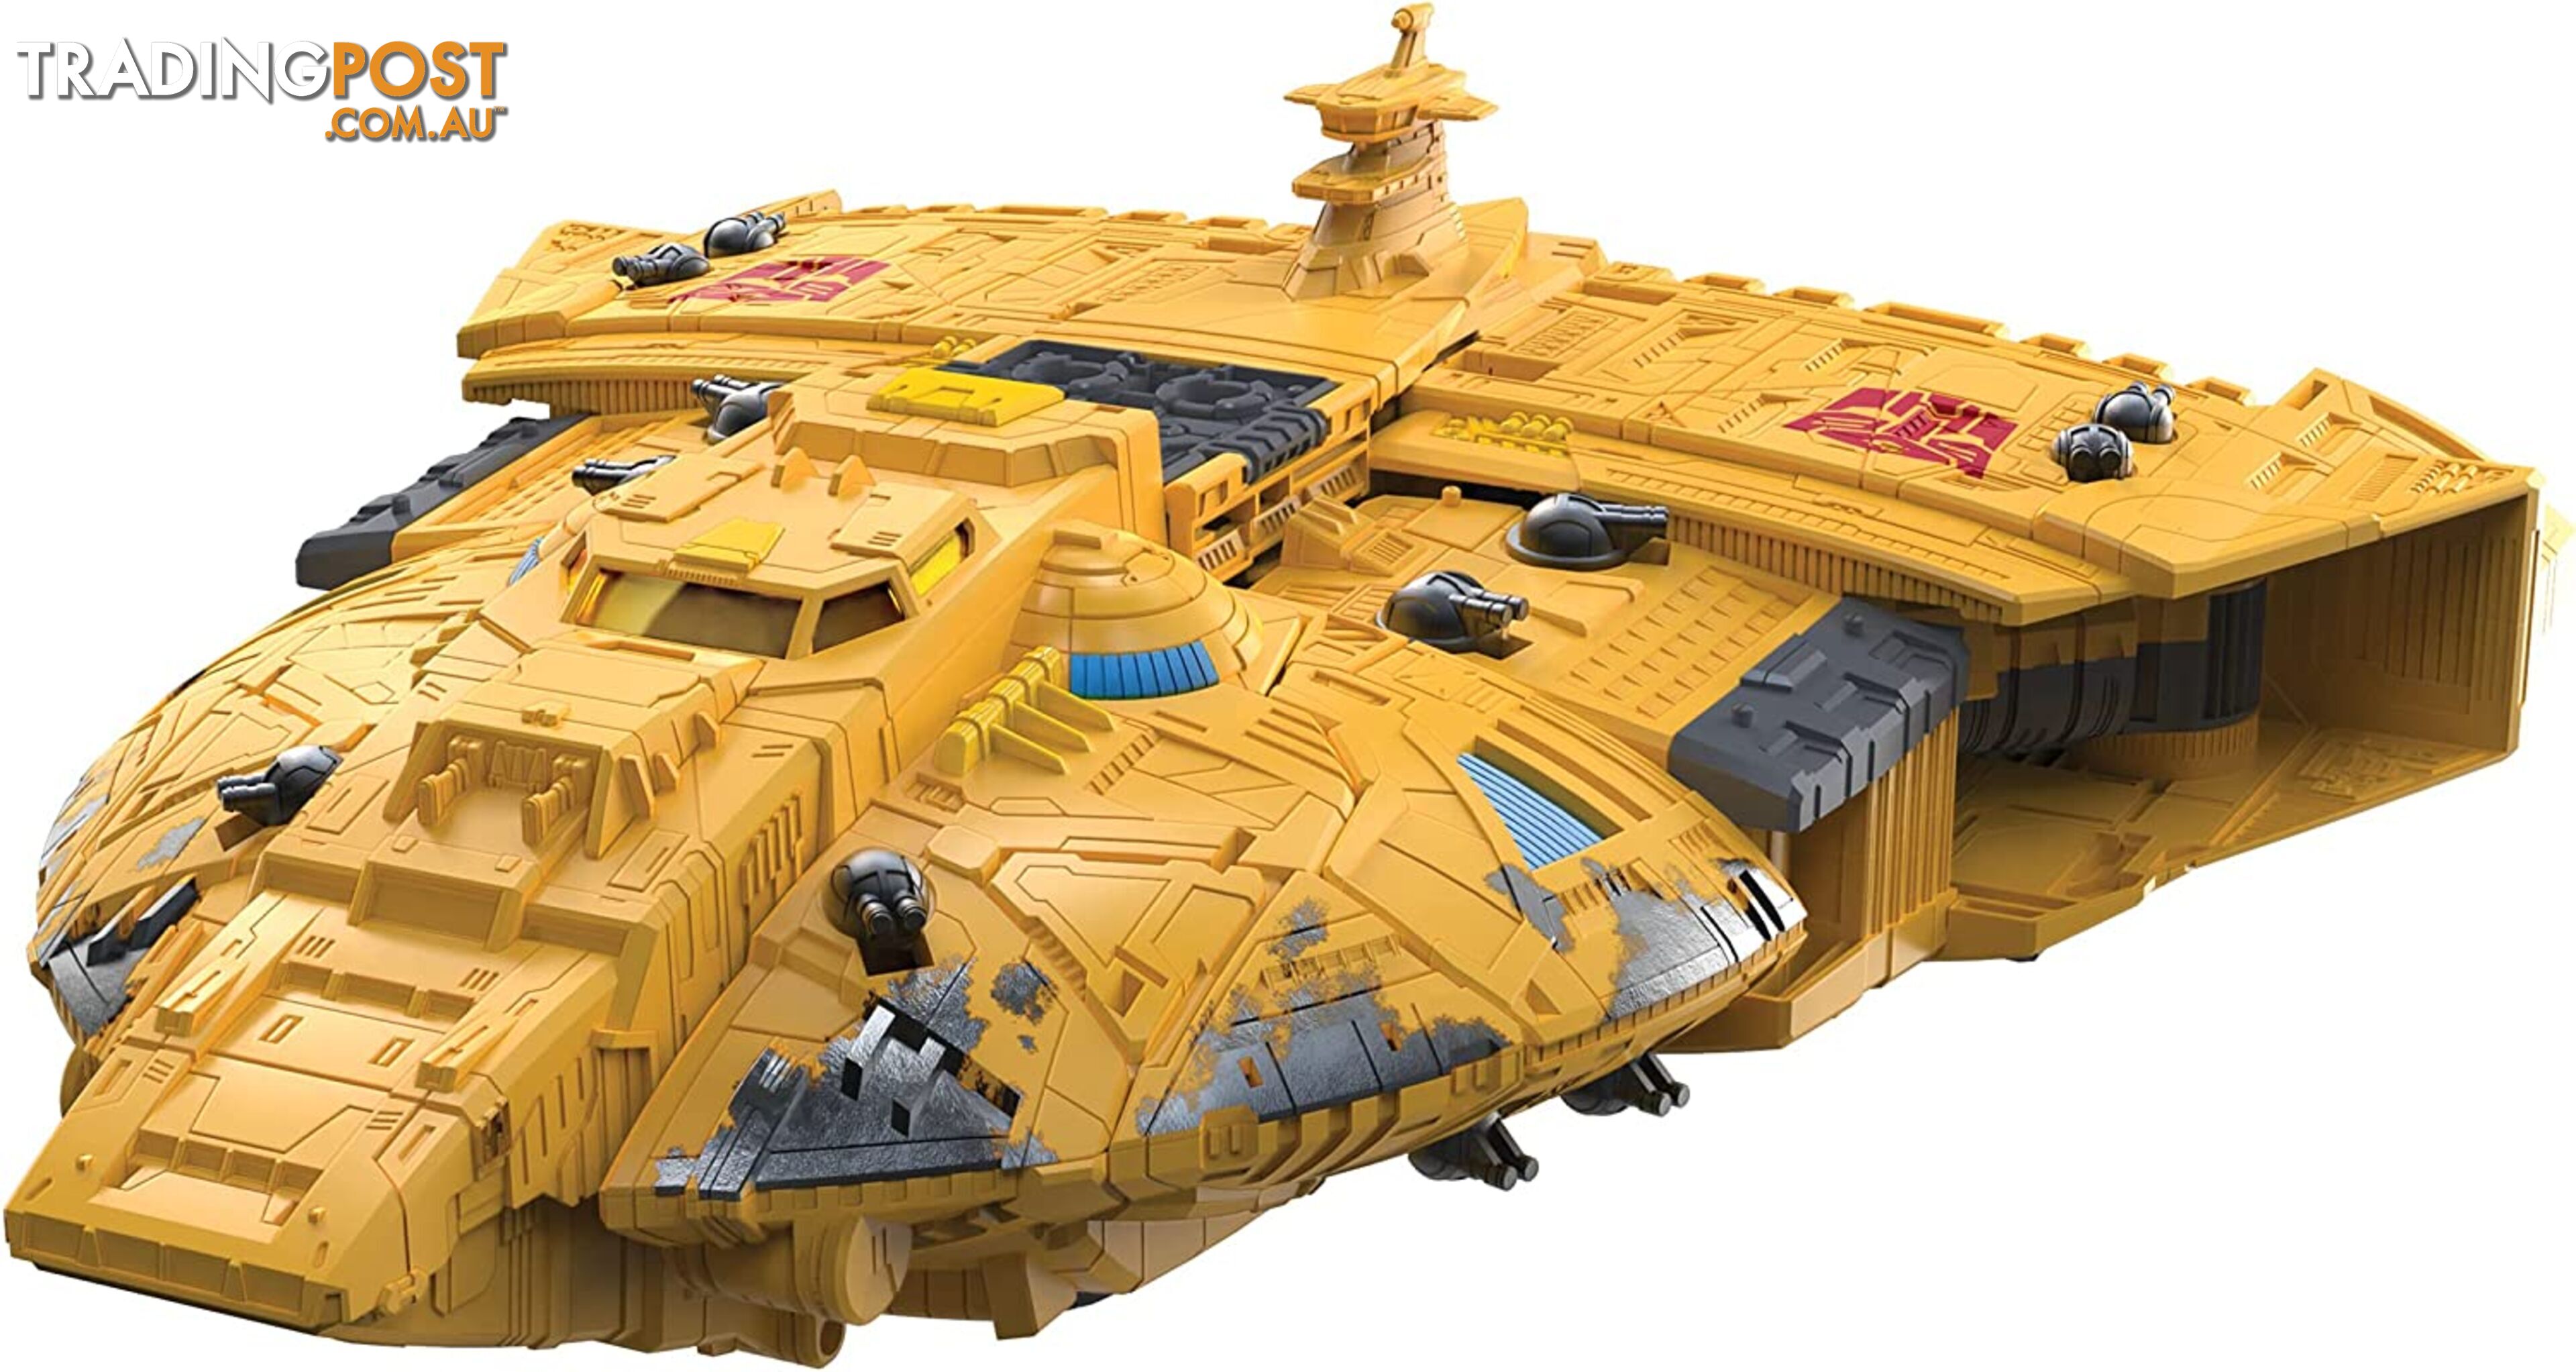 Transformers War For Cybertron Kingdom Titan Class Autobot Ark F1152 - 5010993782536